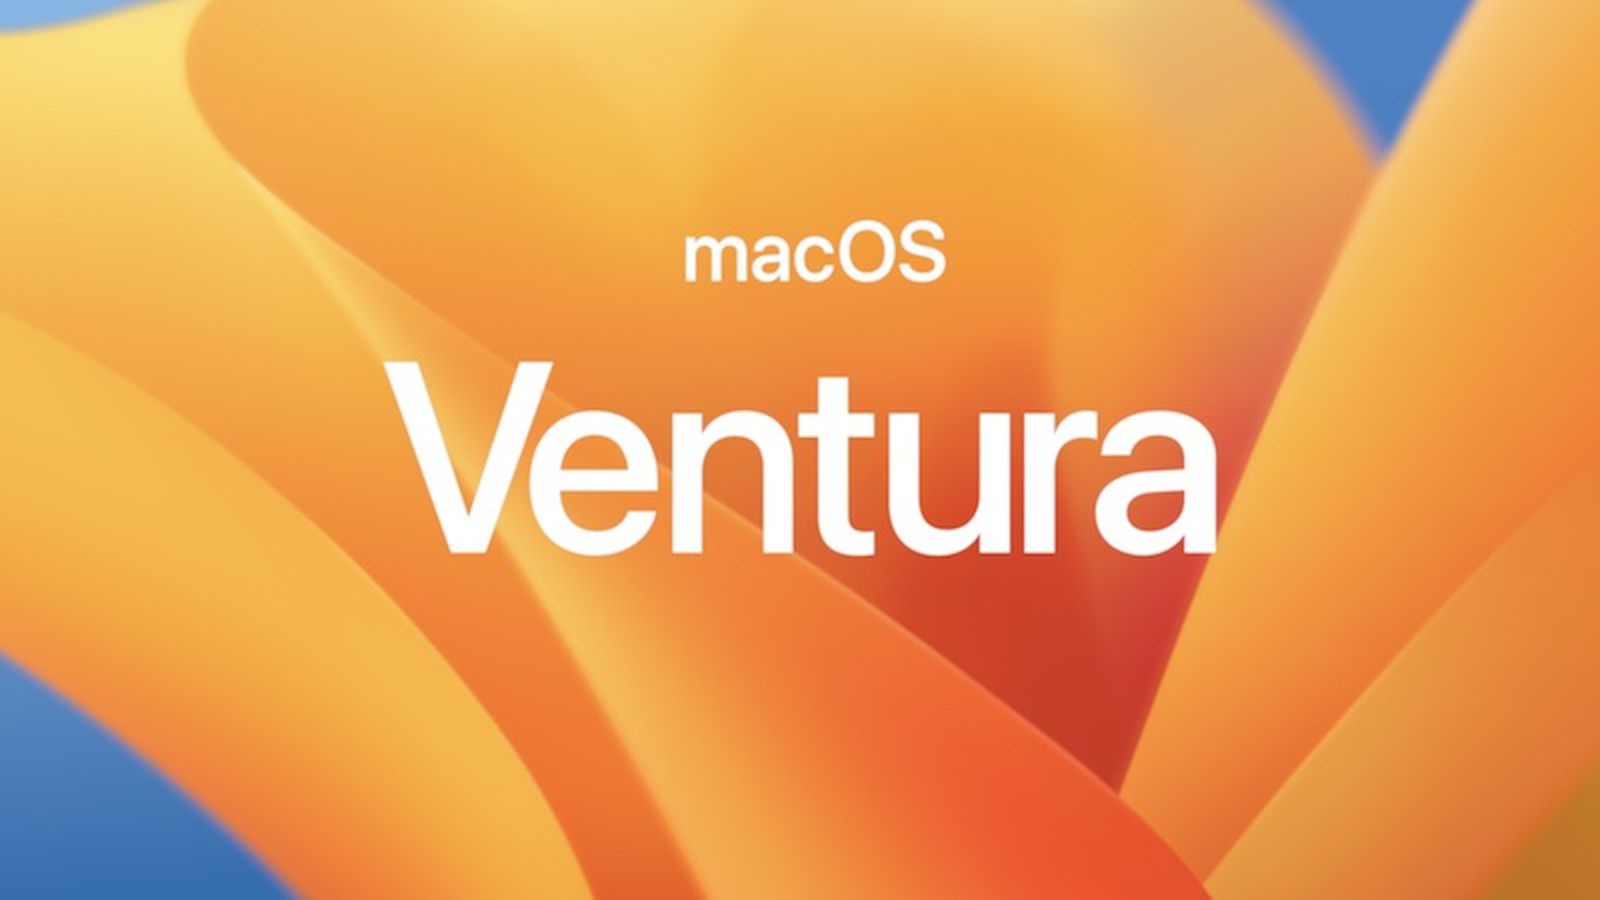 macOS Ventura đang là phiên bản hệ điều hành mới nhất trên MacBook